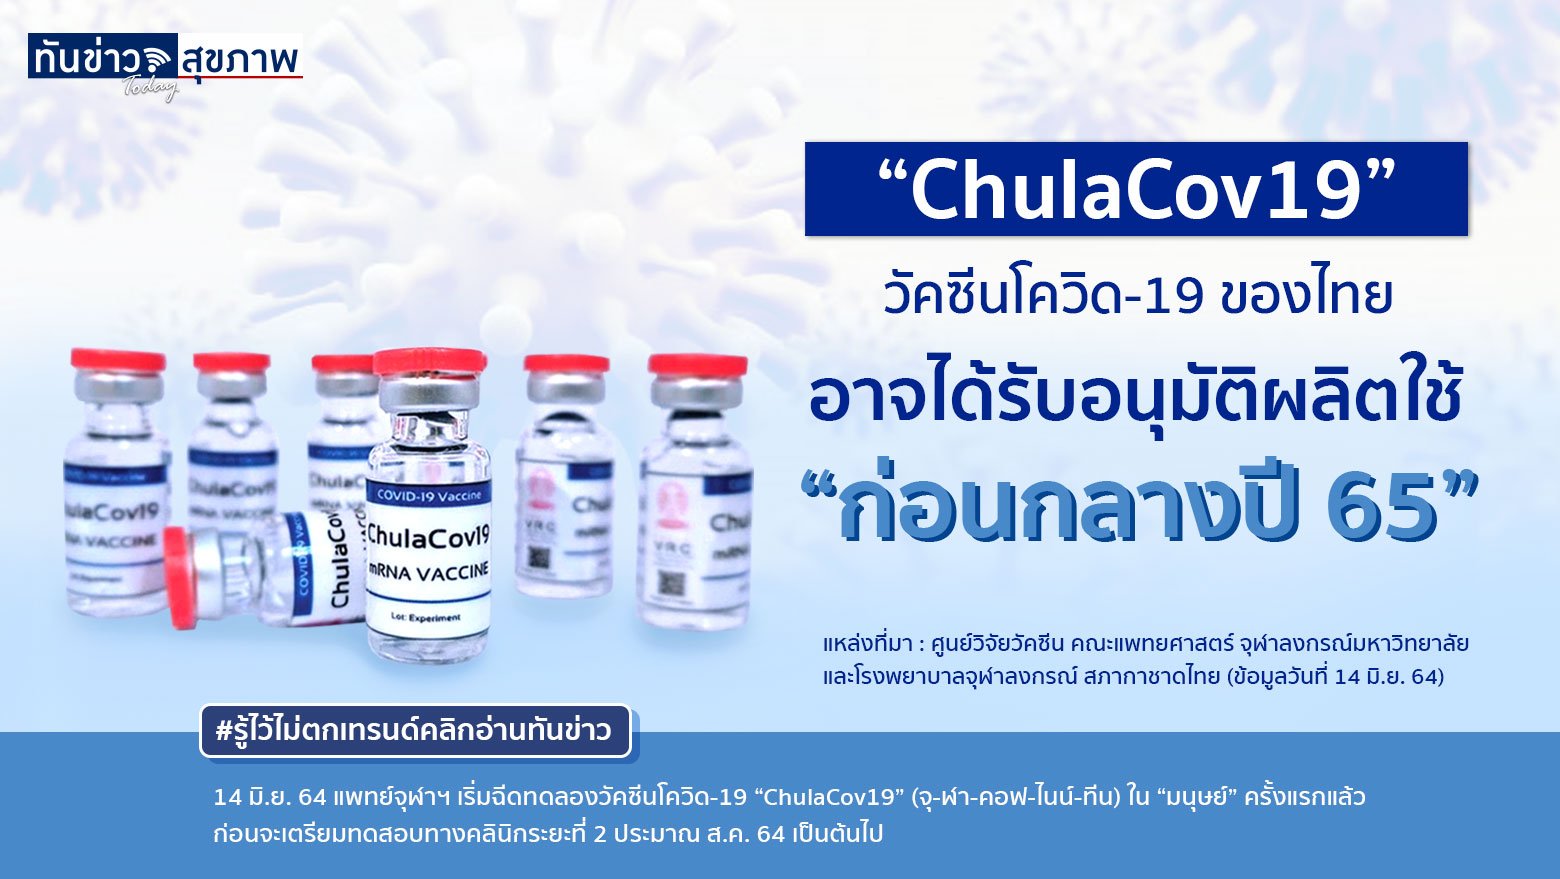 “ChulaCov19” วัคซีนโควิด-19 ของไทย อาจได้รับอนุมัติผลิตใช้ “ก่อนกลางปี 65”